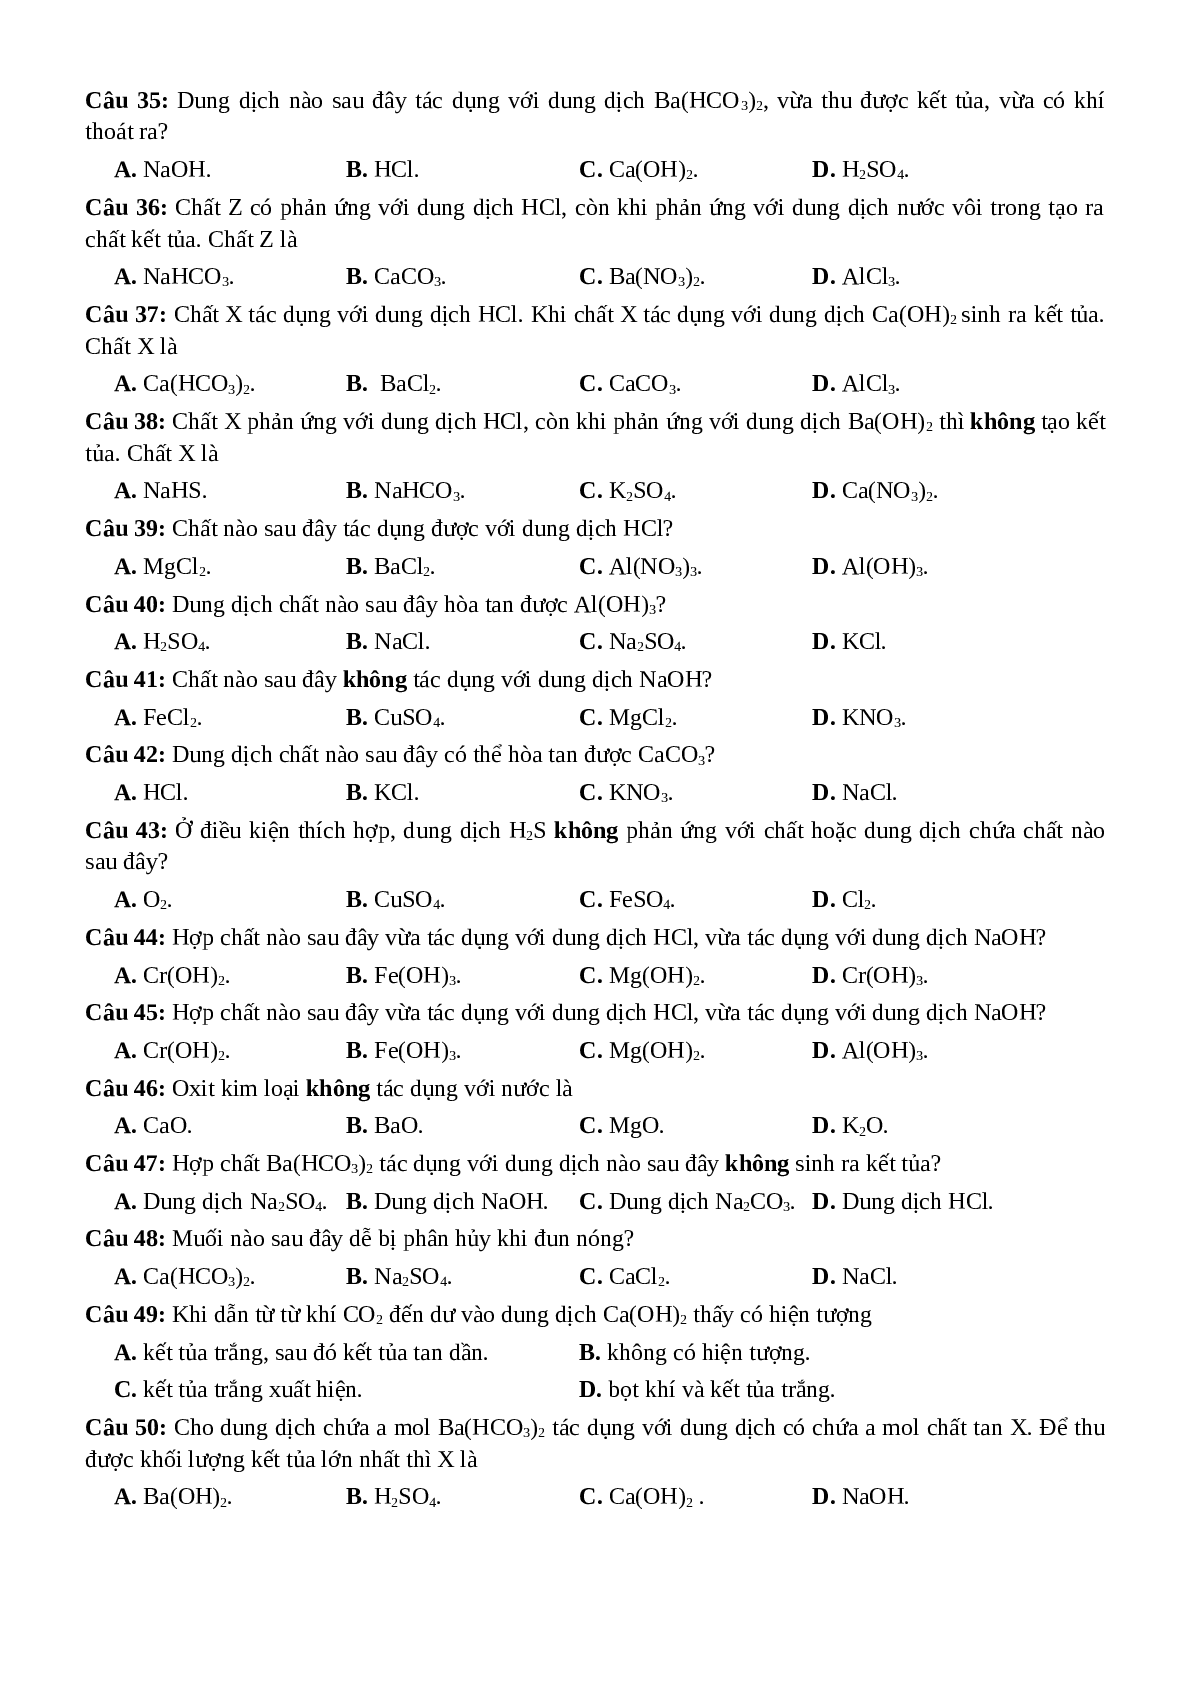 53 Câu hỏi trắc nghiệm xác định công thức, tên của chất - Hoá Học lớp 12 (trang 3)